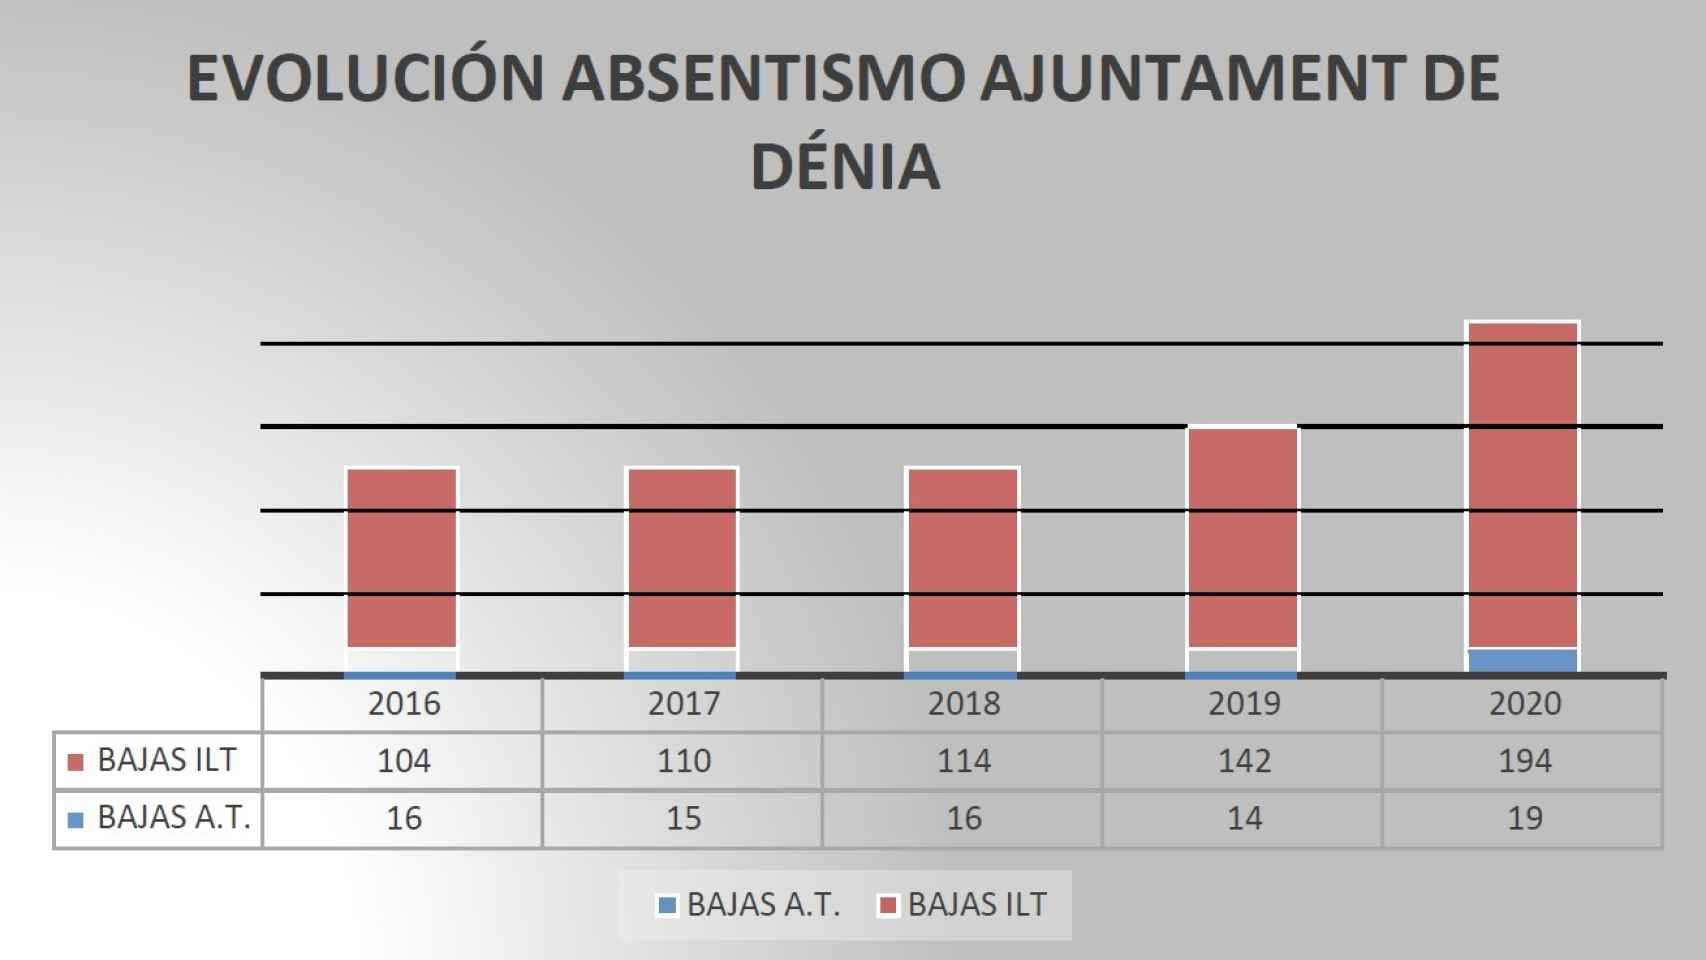 Gráfico realizado por el SEP-CV basado en los datos de Transparencia del Ayuntamiento de Dénia